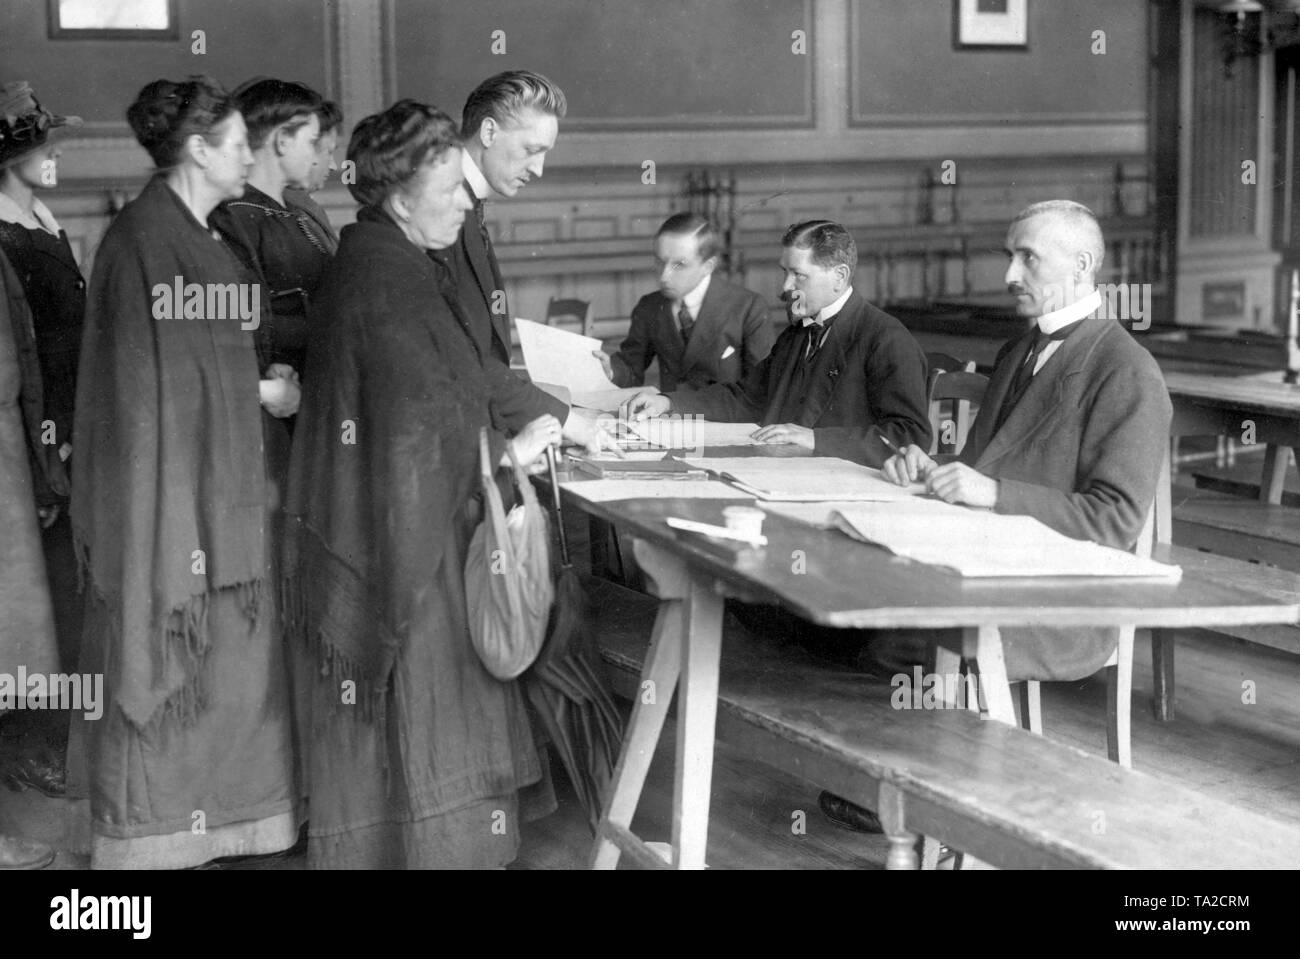 Stazione di polling a Berlino, dove numerose donne sono registrati come elettori nelle liste di voto. Per la prima volta nella storia tedesca, le donne avevano il pieno voto attivo e passivo a destra qui in occasione delle elezioni per l Assemblea Nazionale il 19.1.1919. Foto Stock